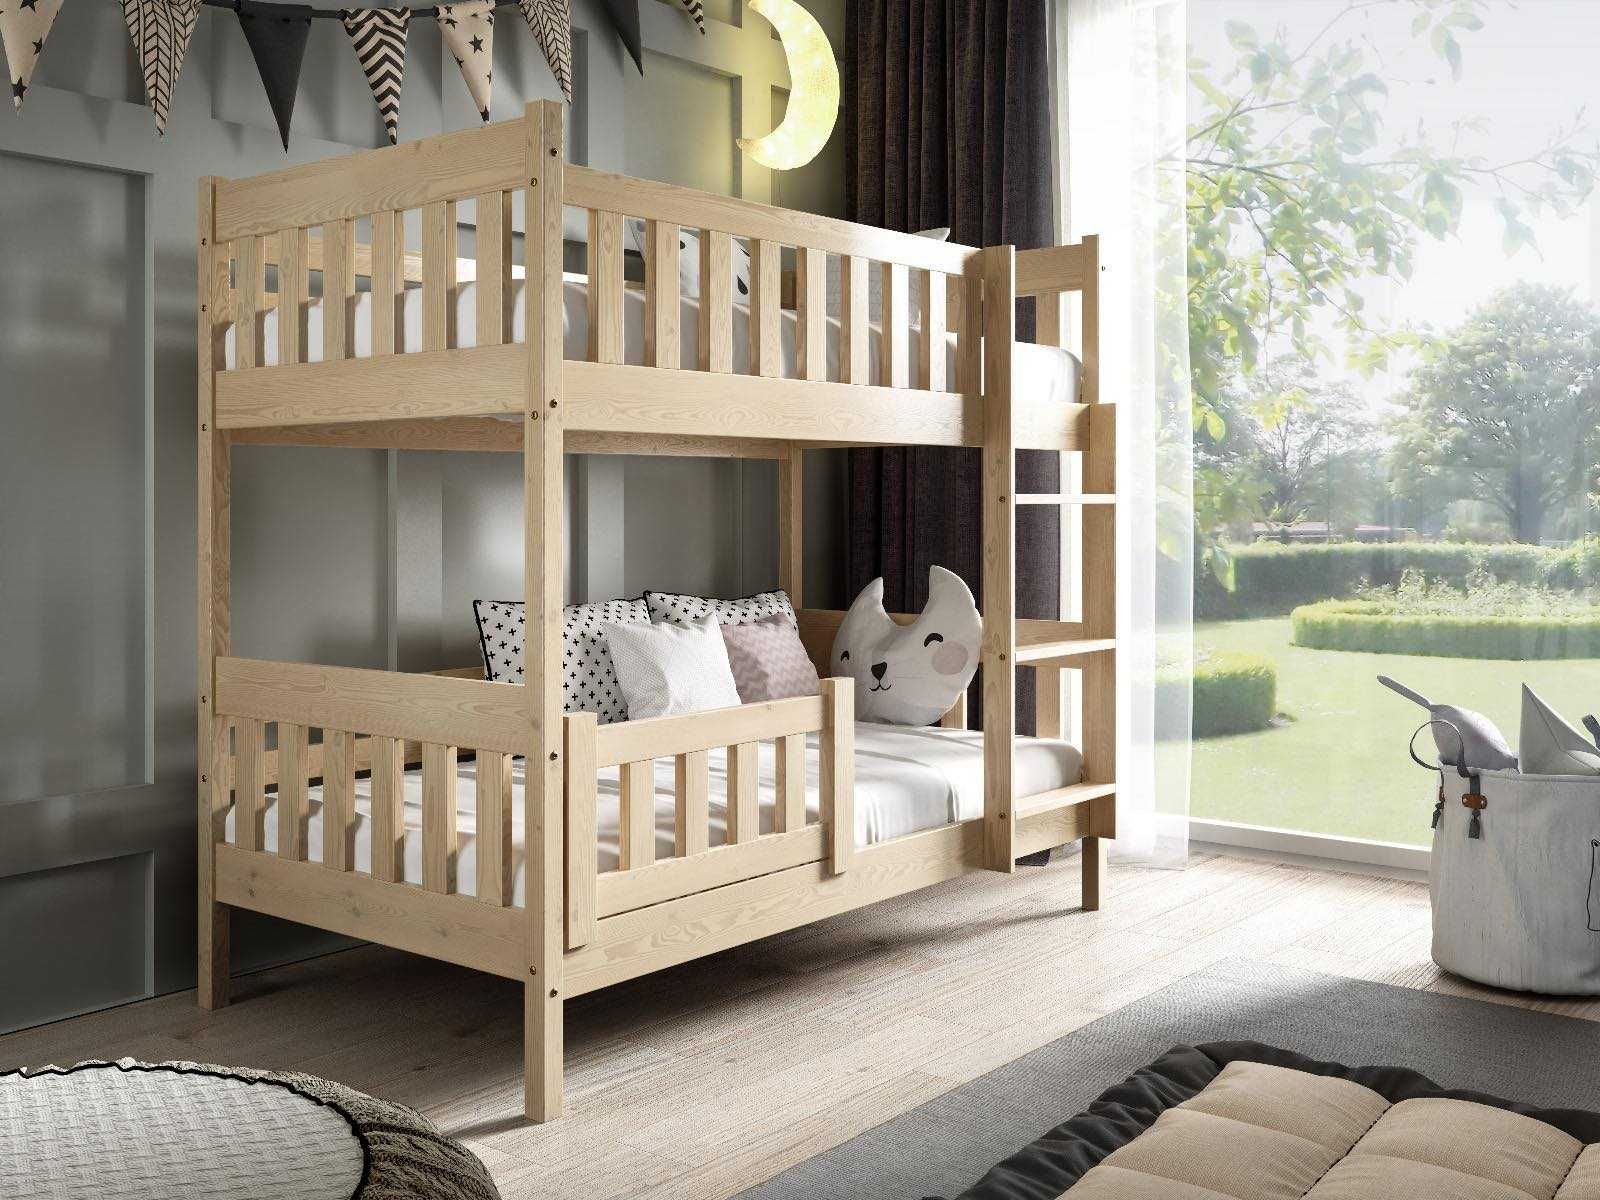 Drewniane łóżko piętrowe LILA - styl skandynawski - 3 kolory!